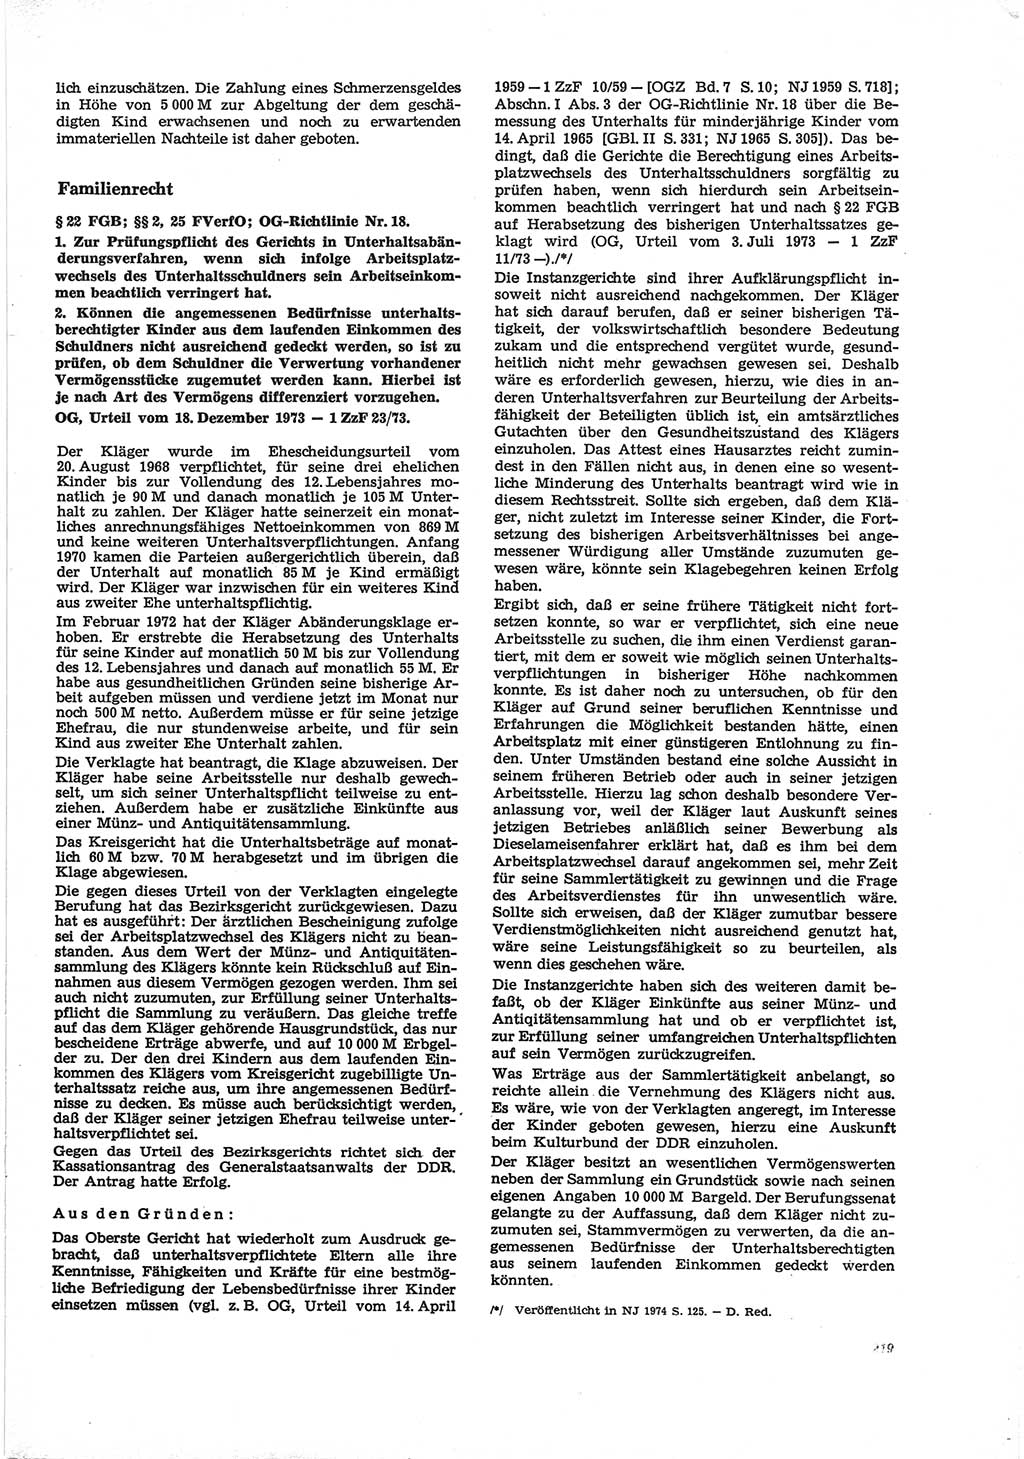 Neue Justiz (NJ), Zeitschrift für Recht und Rechtswissenschaft [Deutsche Demokratische Republik (DDR)], 28. Jahrgang 1974, Seite 219 (NJ DDR 1974, S. 219)